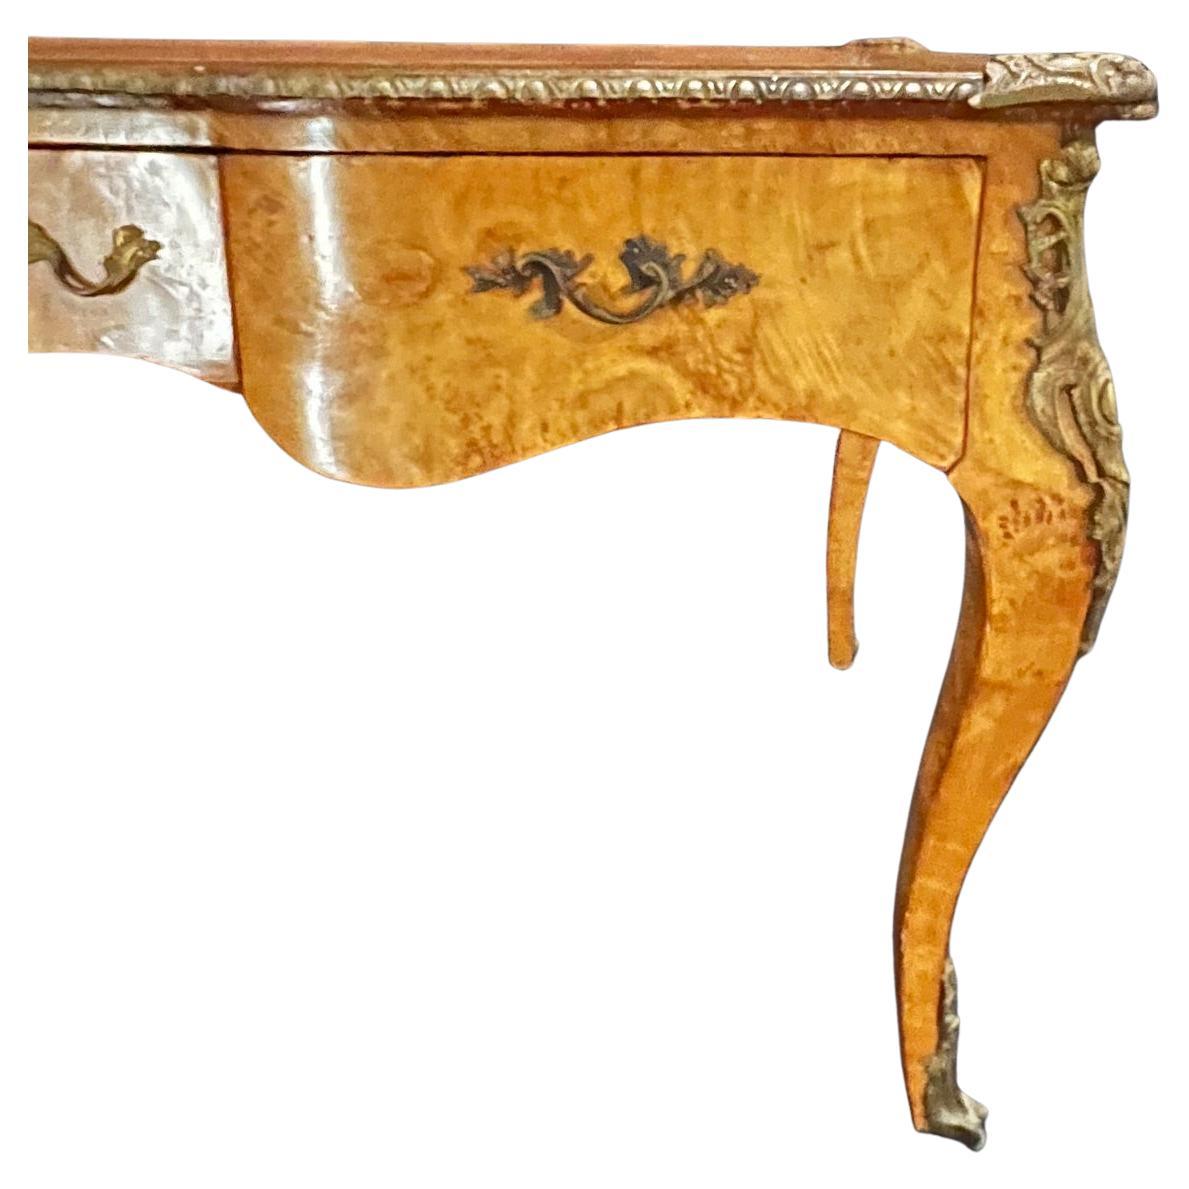 Ein hervorragender französischer Schreibtisch im Stil von Louis XV mit Bronzebeschlägen und Ormolu-Beschlägen und geprägter Lederplatte. Der Schreibtisch ist an allen Seiten bearbeitet und kann schwebend im Raum verwendet werden. 24,5 h über